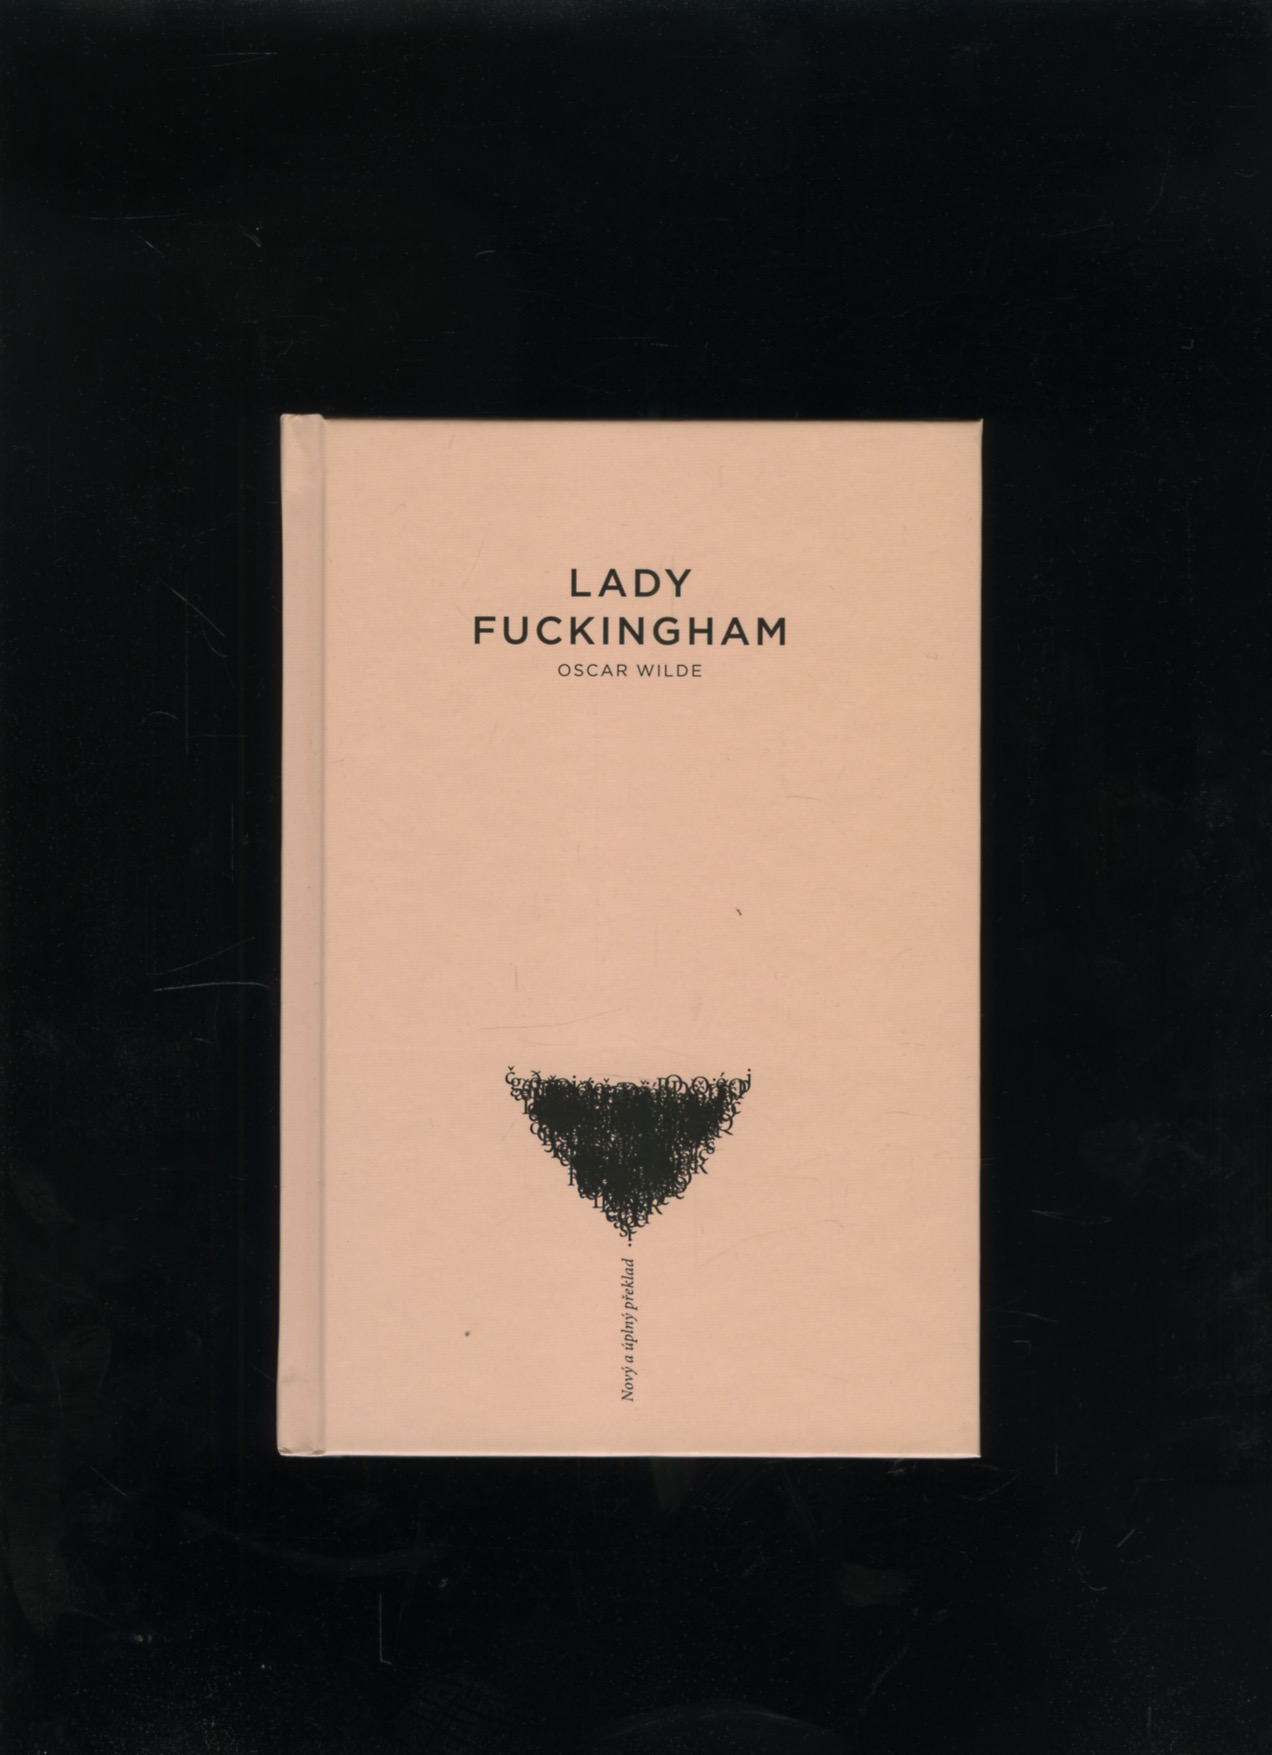 Lady Fuckingham (Oscar Wilde)